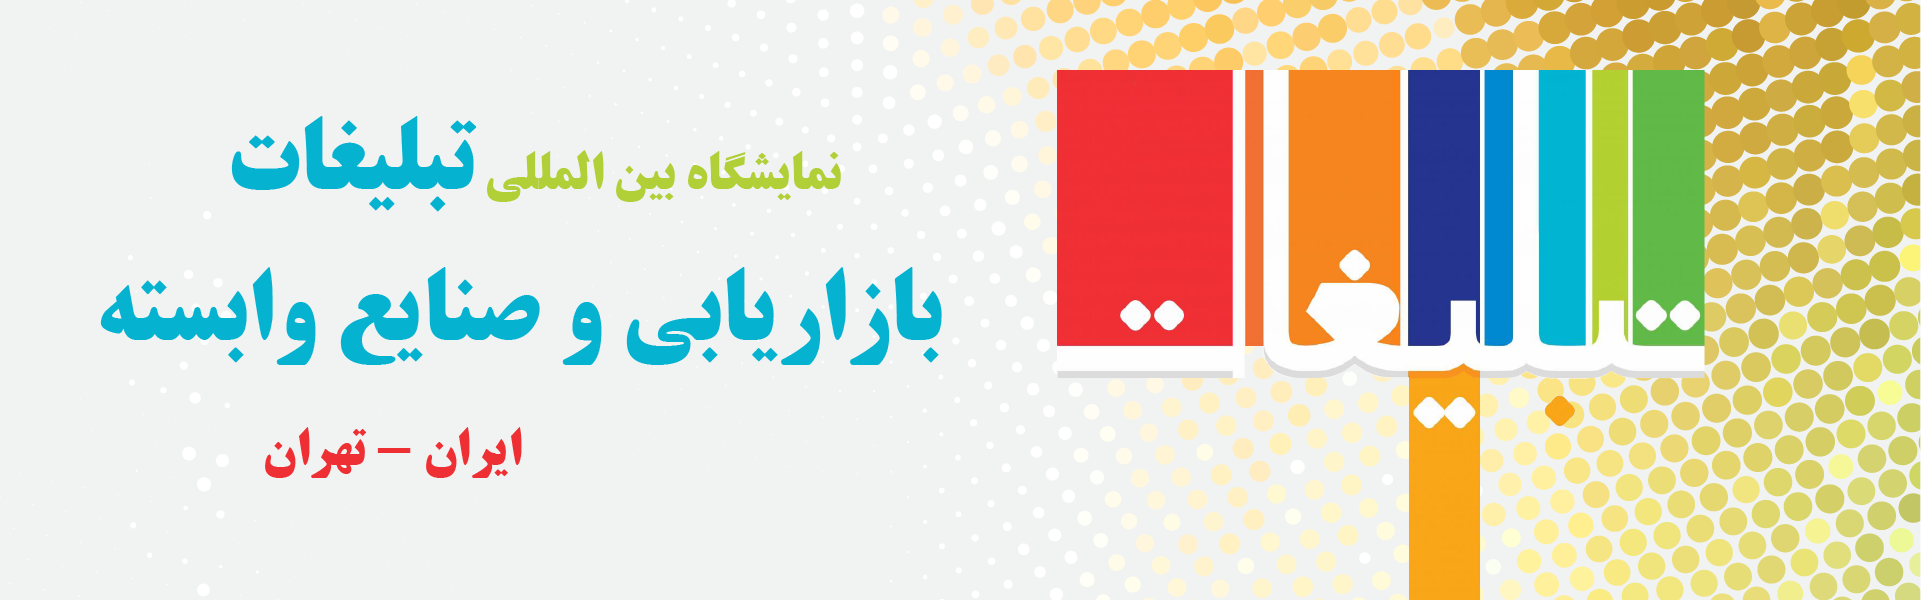 نمایشگاه بین المللی تبلیغات، بازاریابی و صنایع وابسته تهران ایران